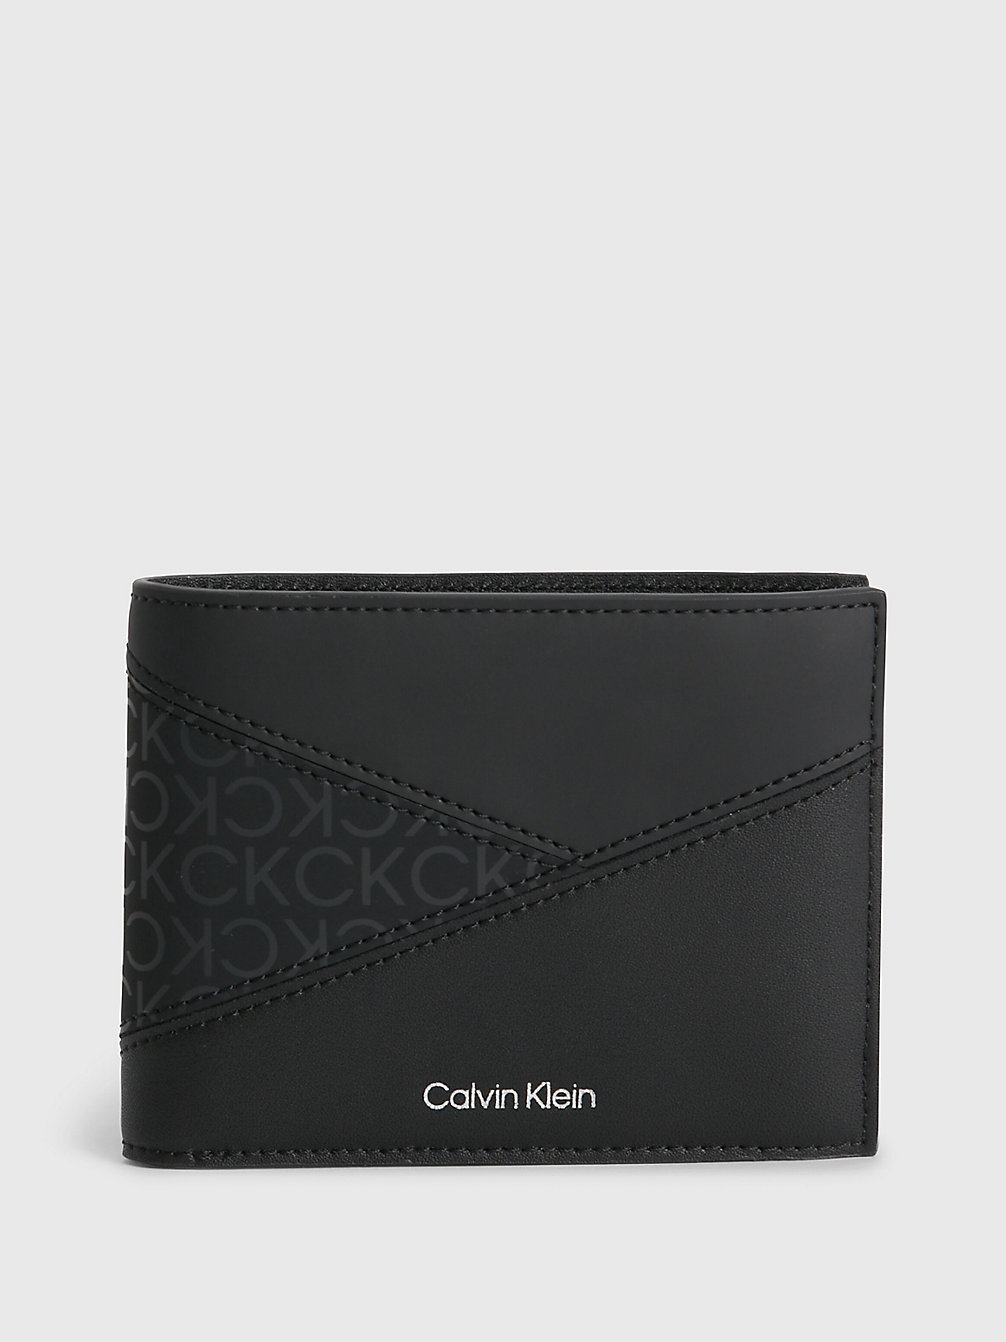 CK BLACK Rfid-Portemonnaie Aus Recyceltem Material undefined Herren Calvin Klein